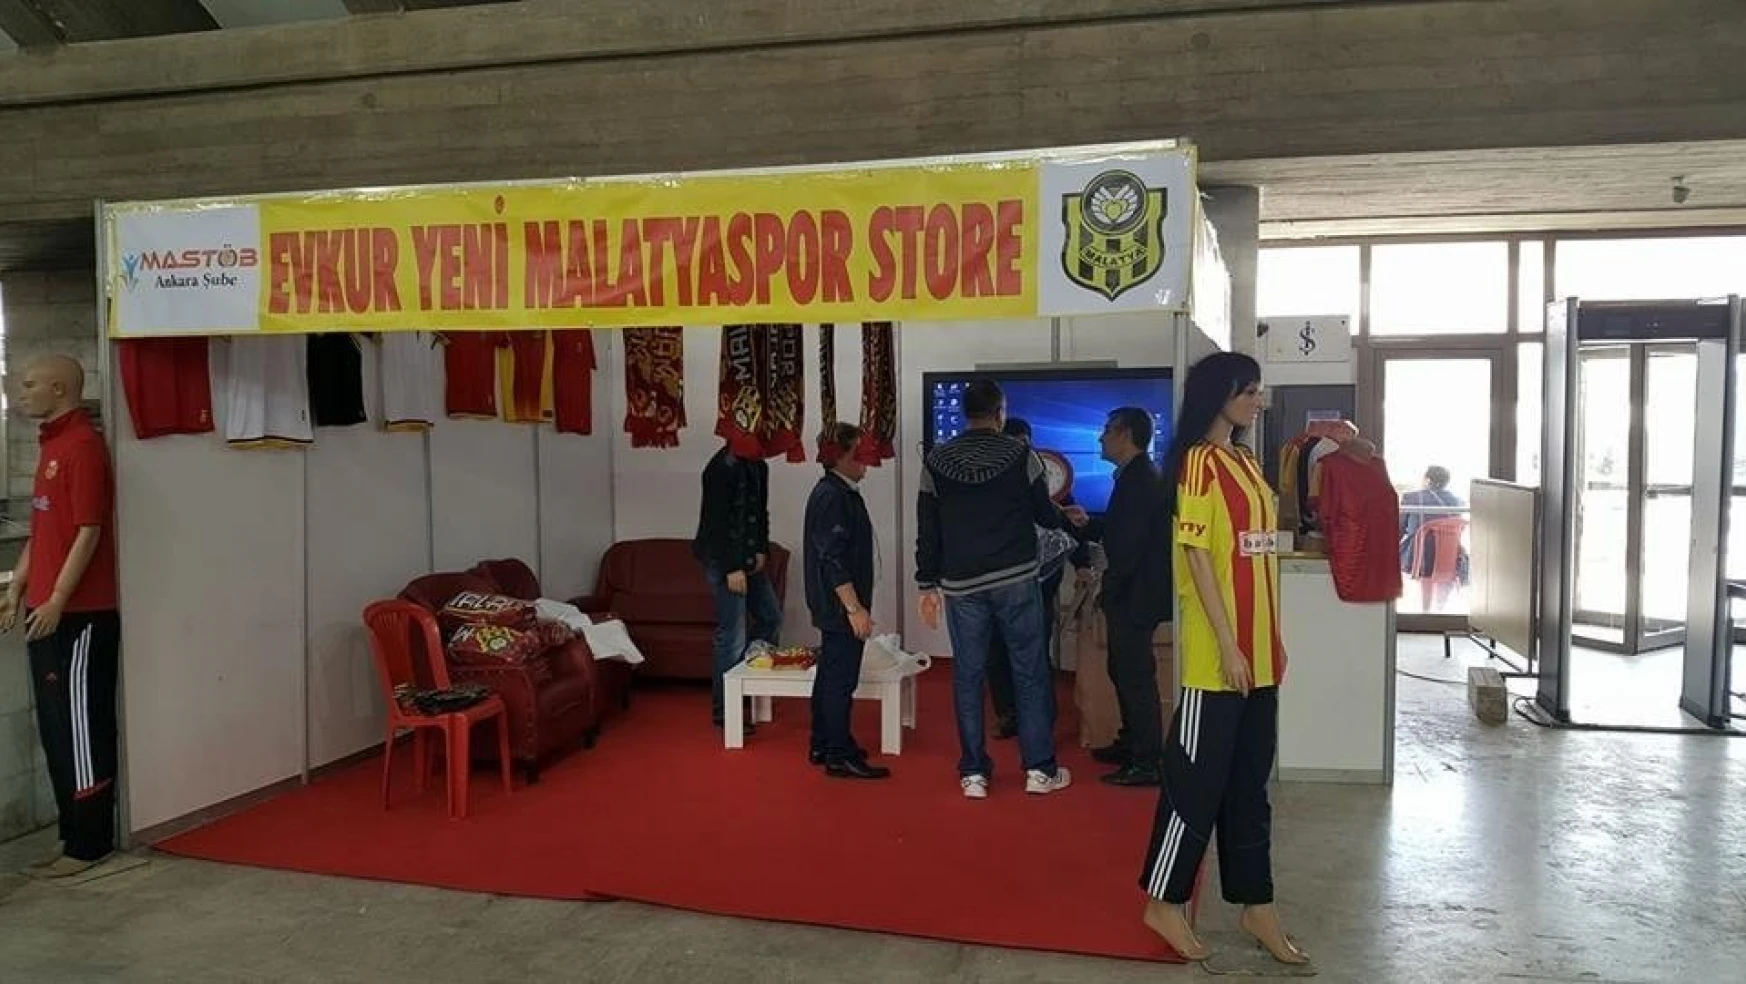 Malatya Tanıtım Günleri'nde Evkur Yeni Malatyaspor standı
